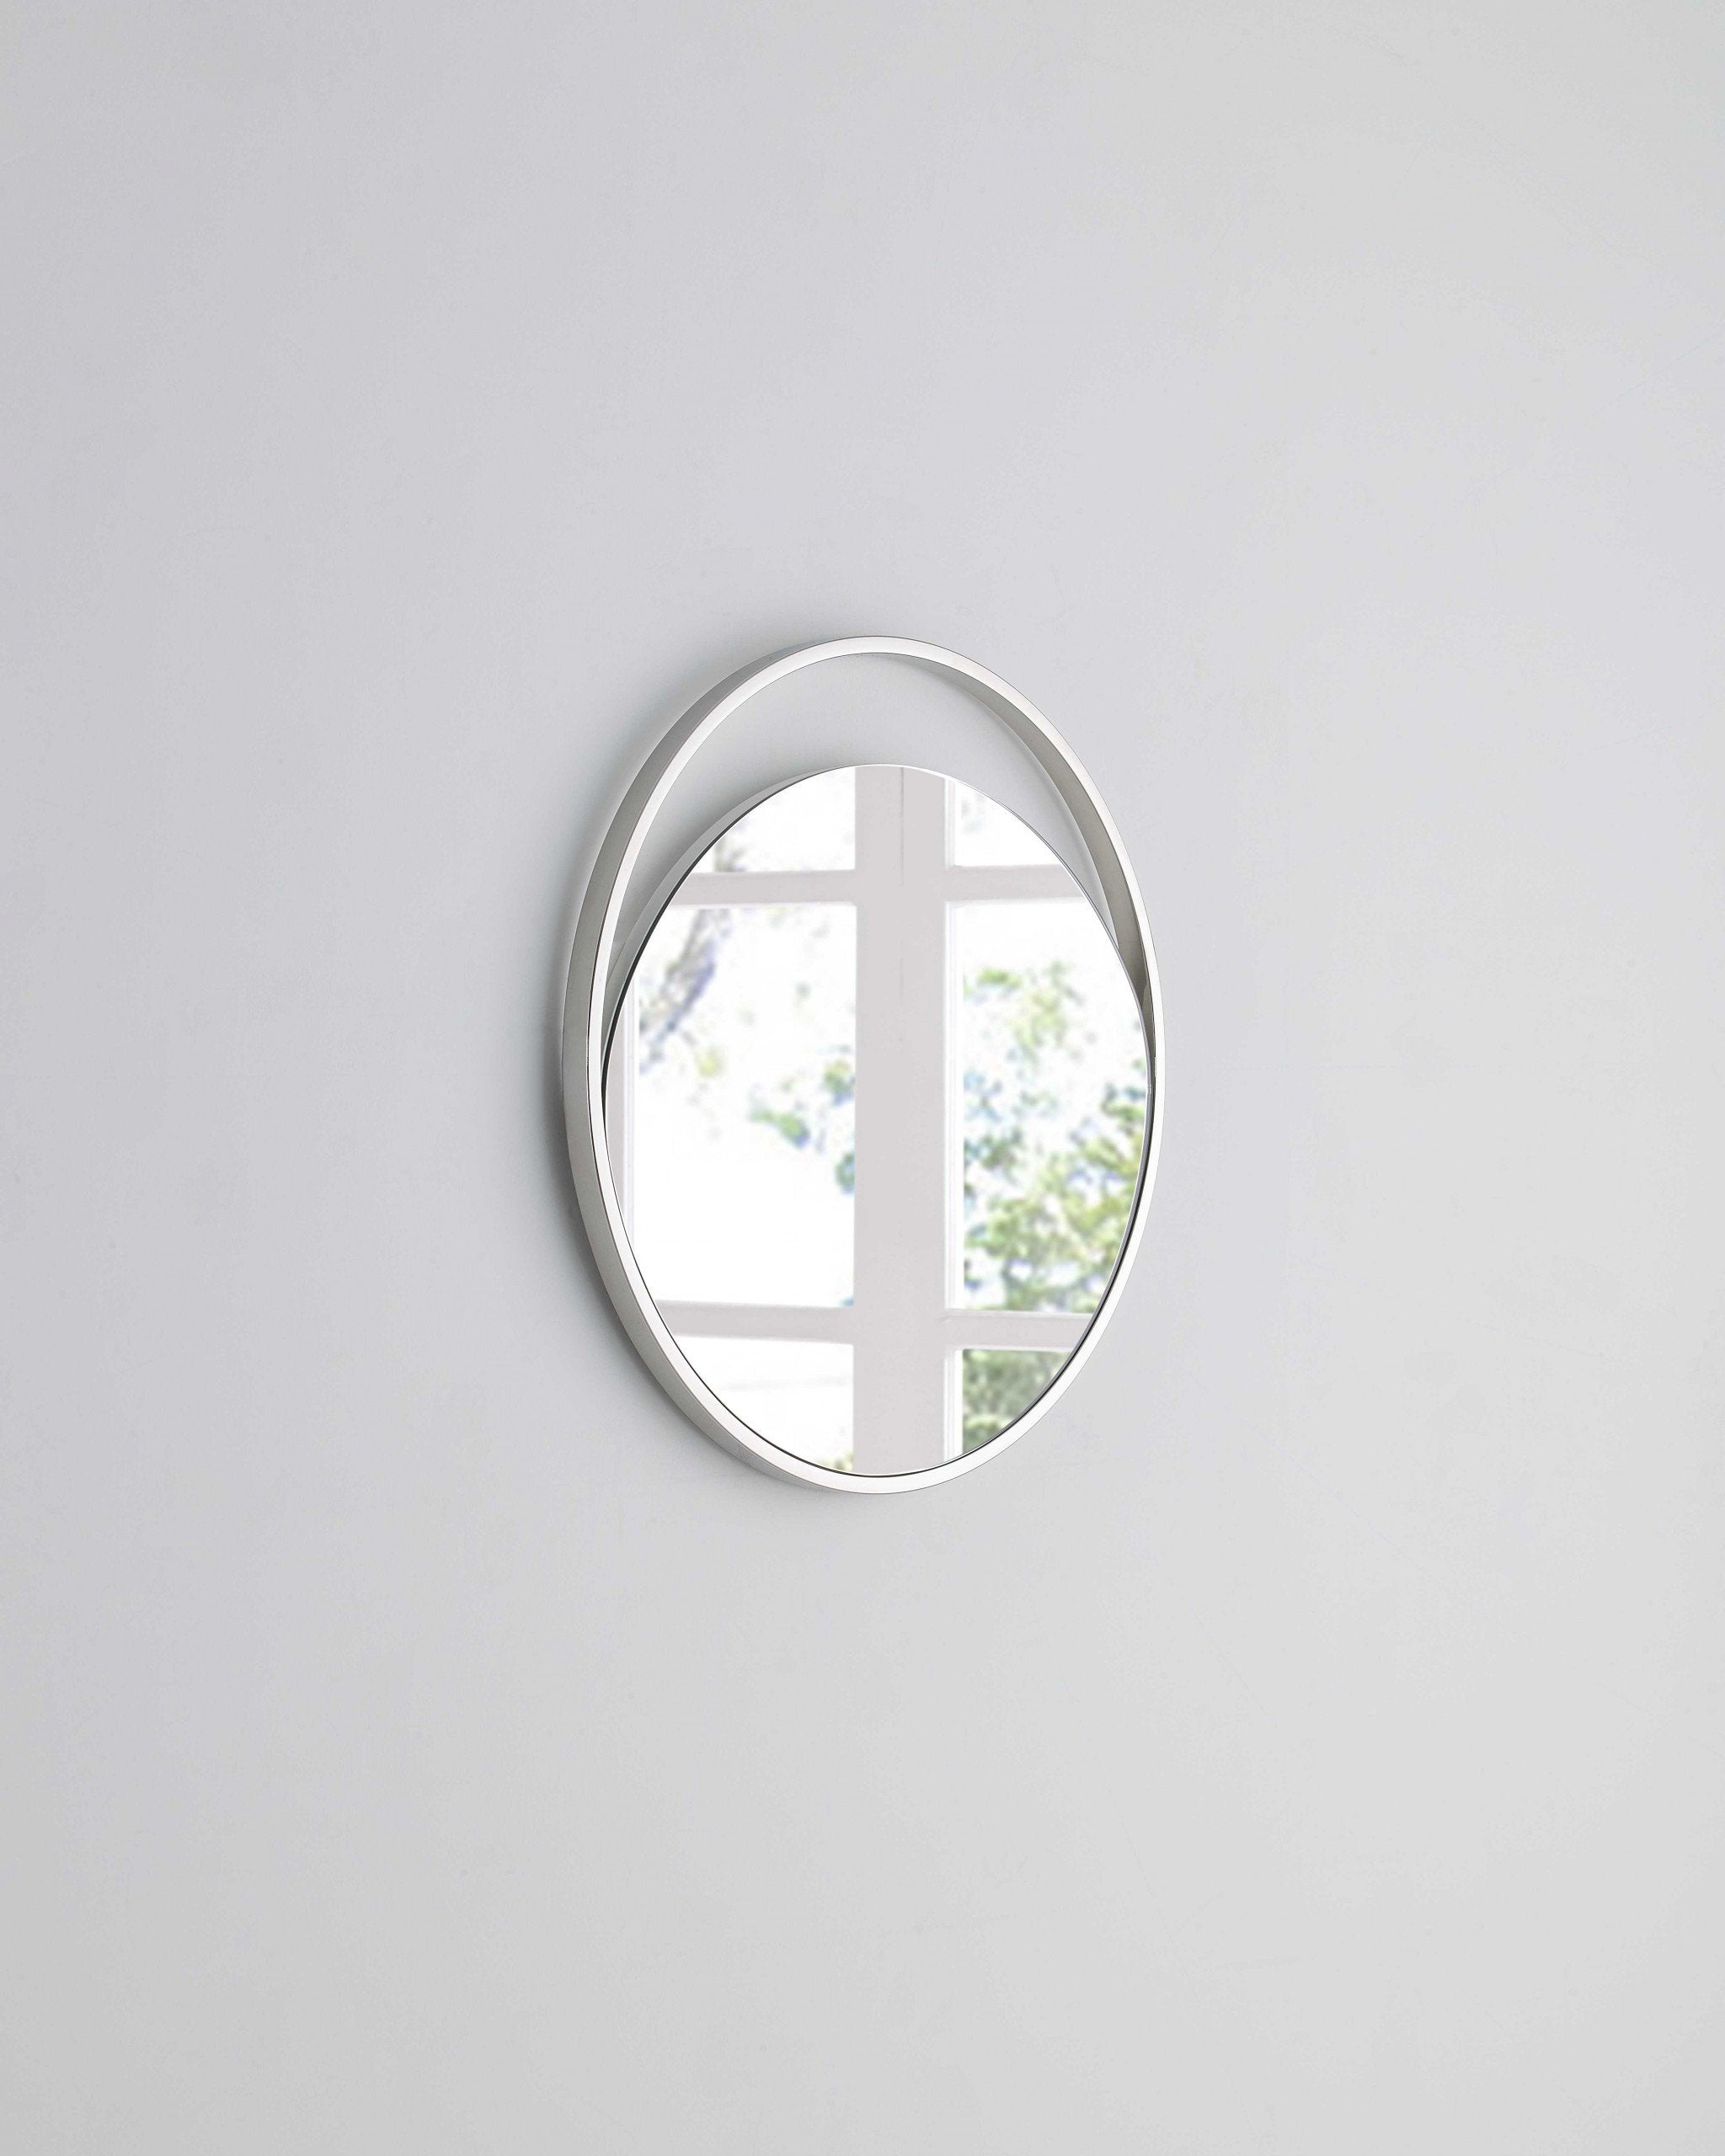 23" X 1.5" X White Glass Small Round Mirror